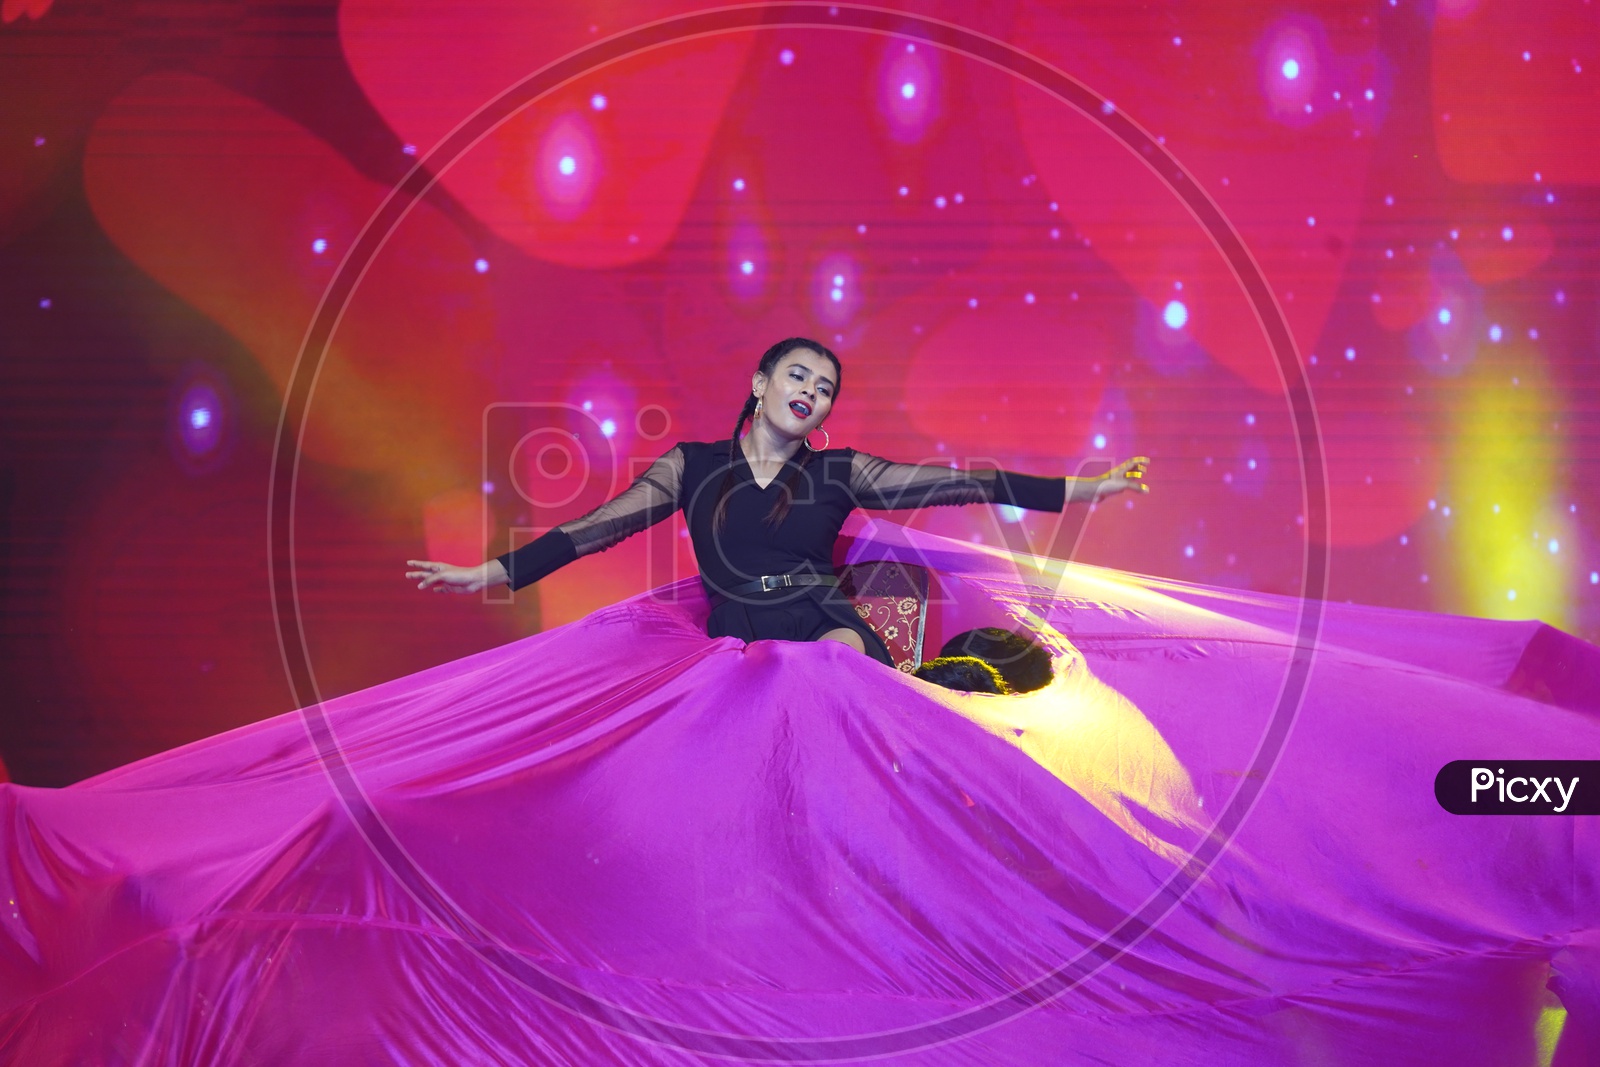 Hebah Patel Dance Performance in Social Media Summit & Awards Amaravati 2018